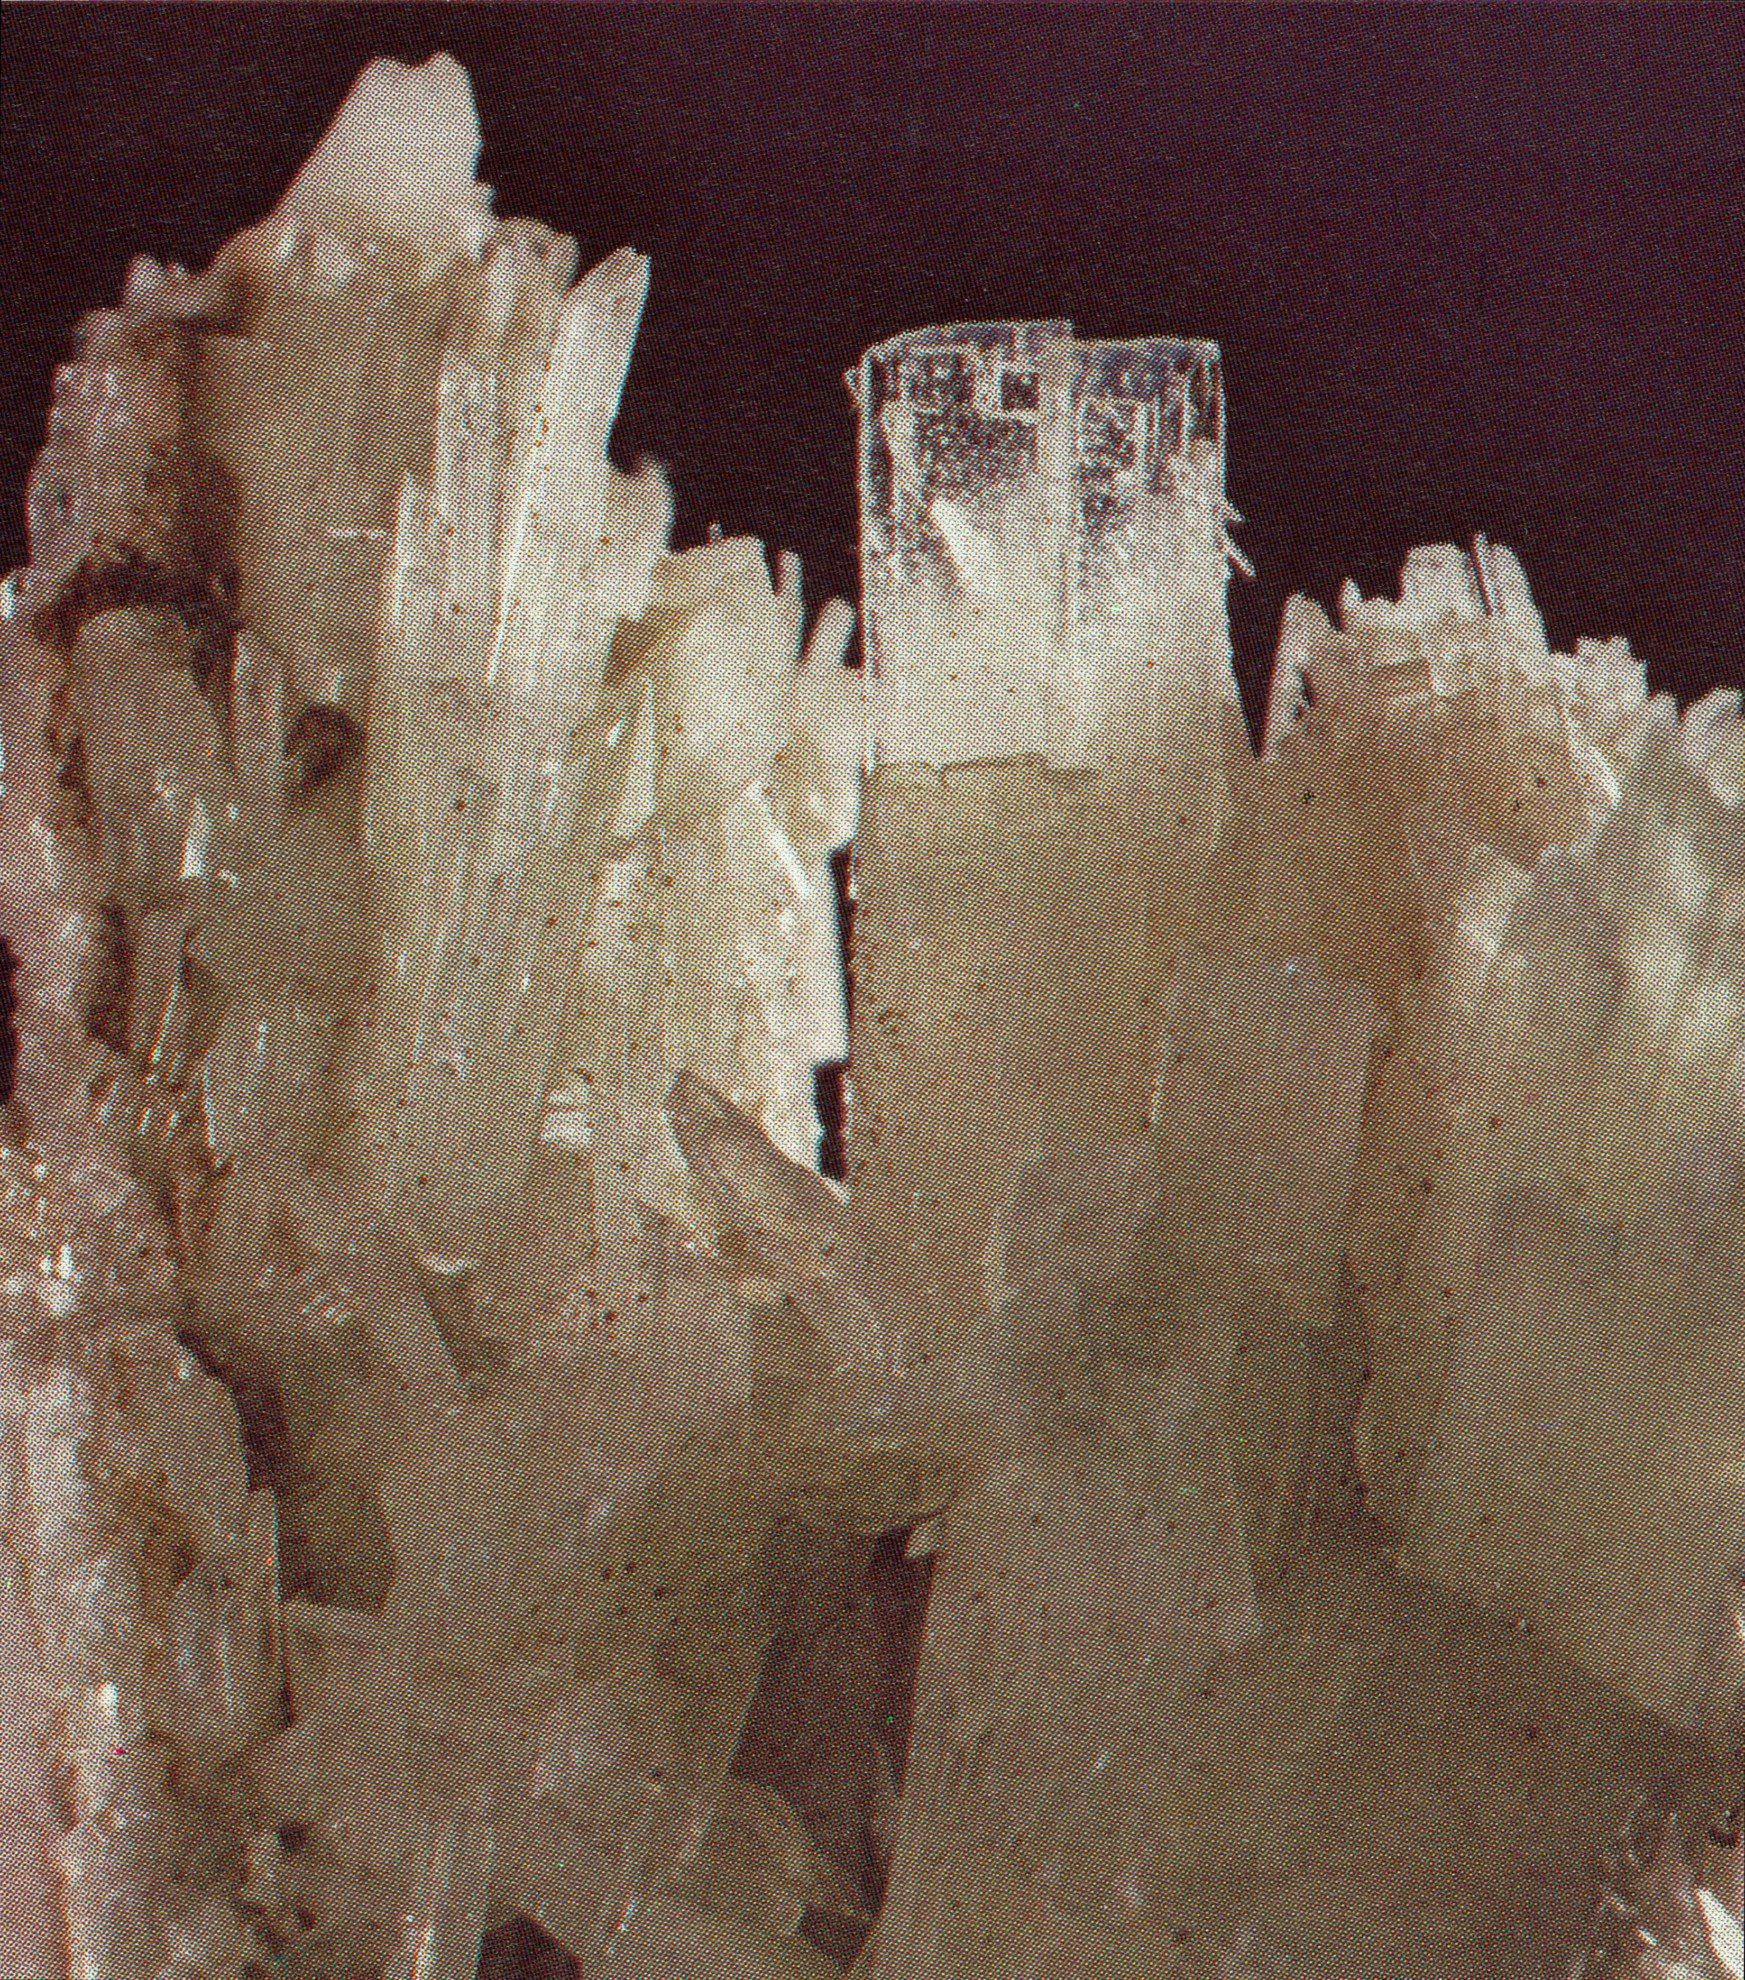 pectolite crystals - Canada